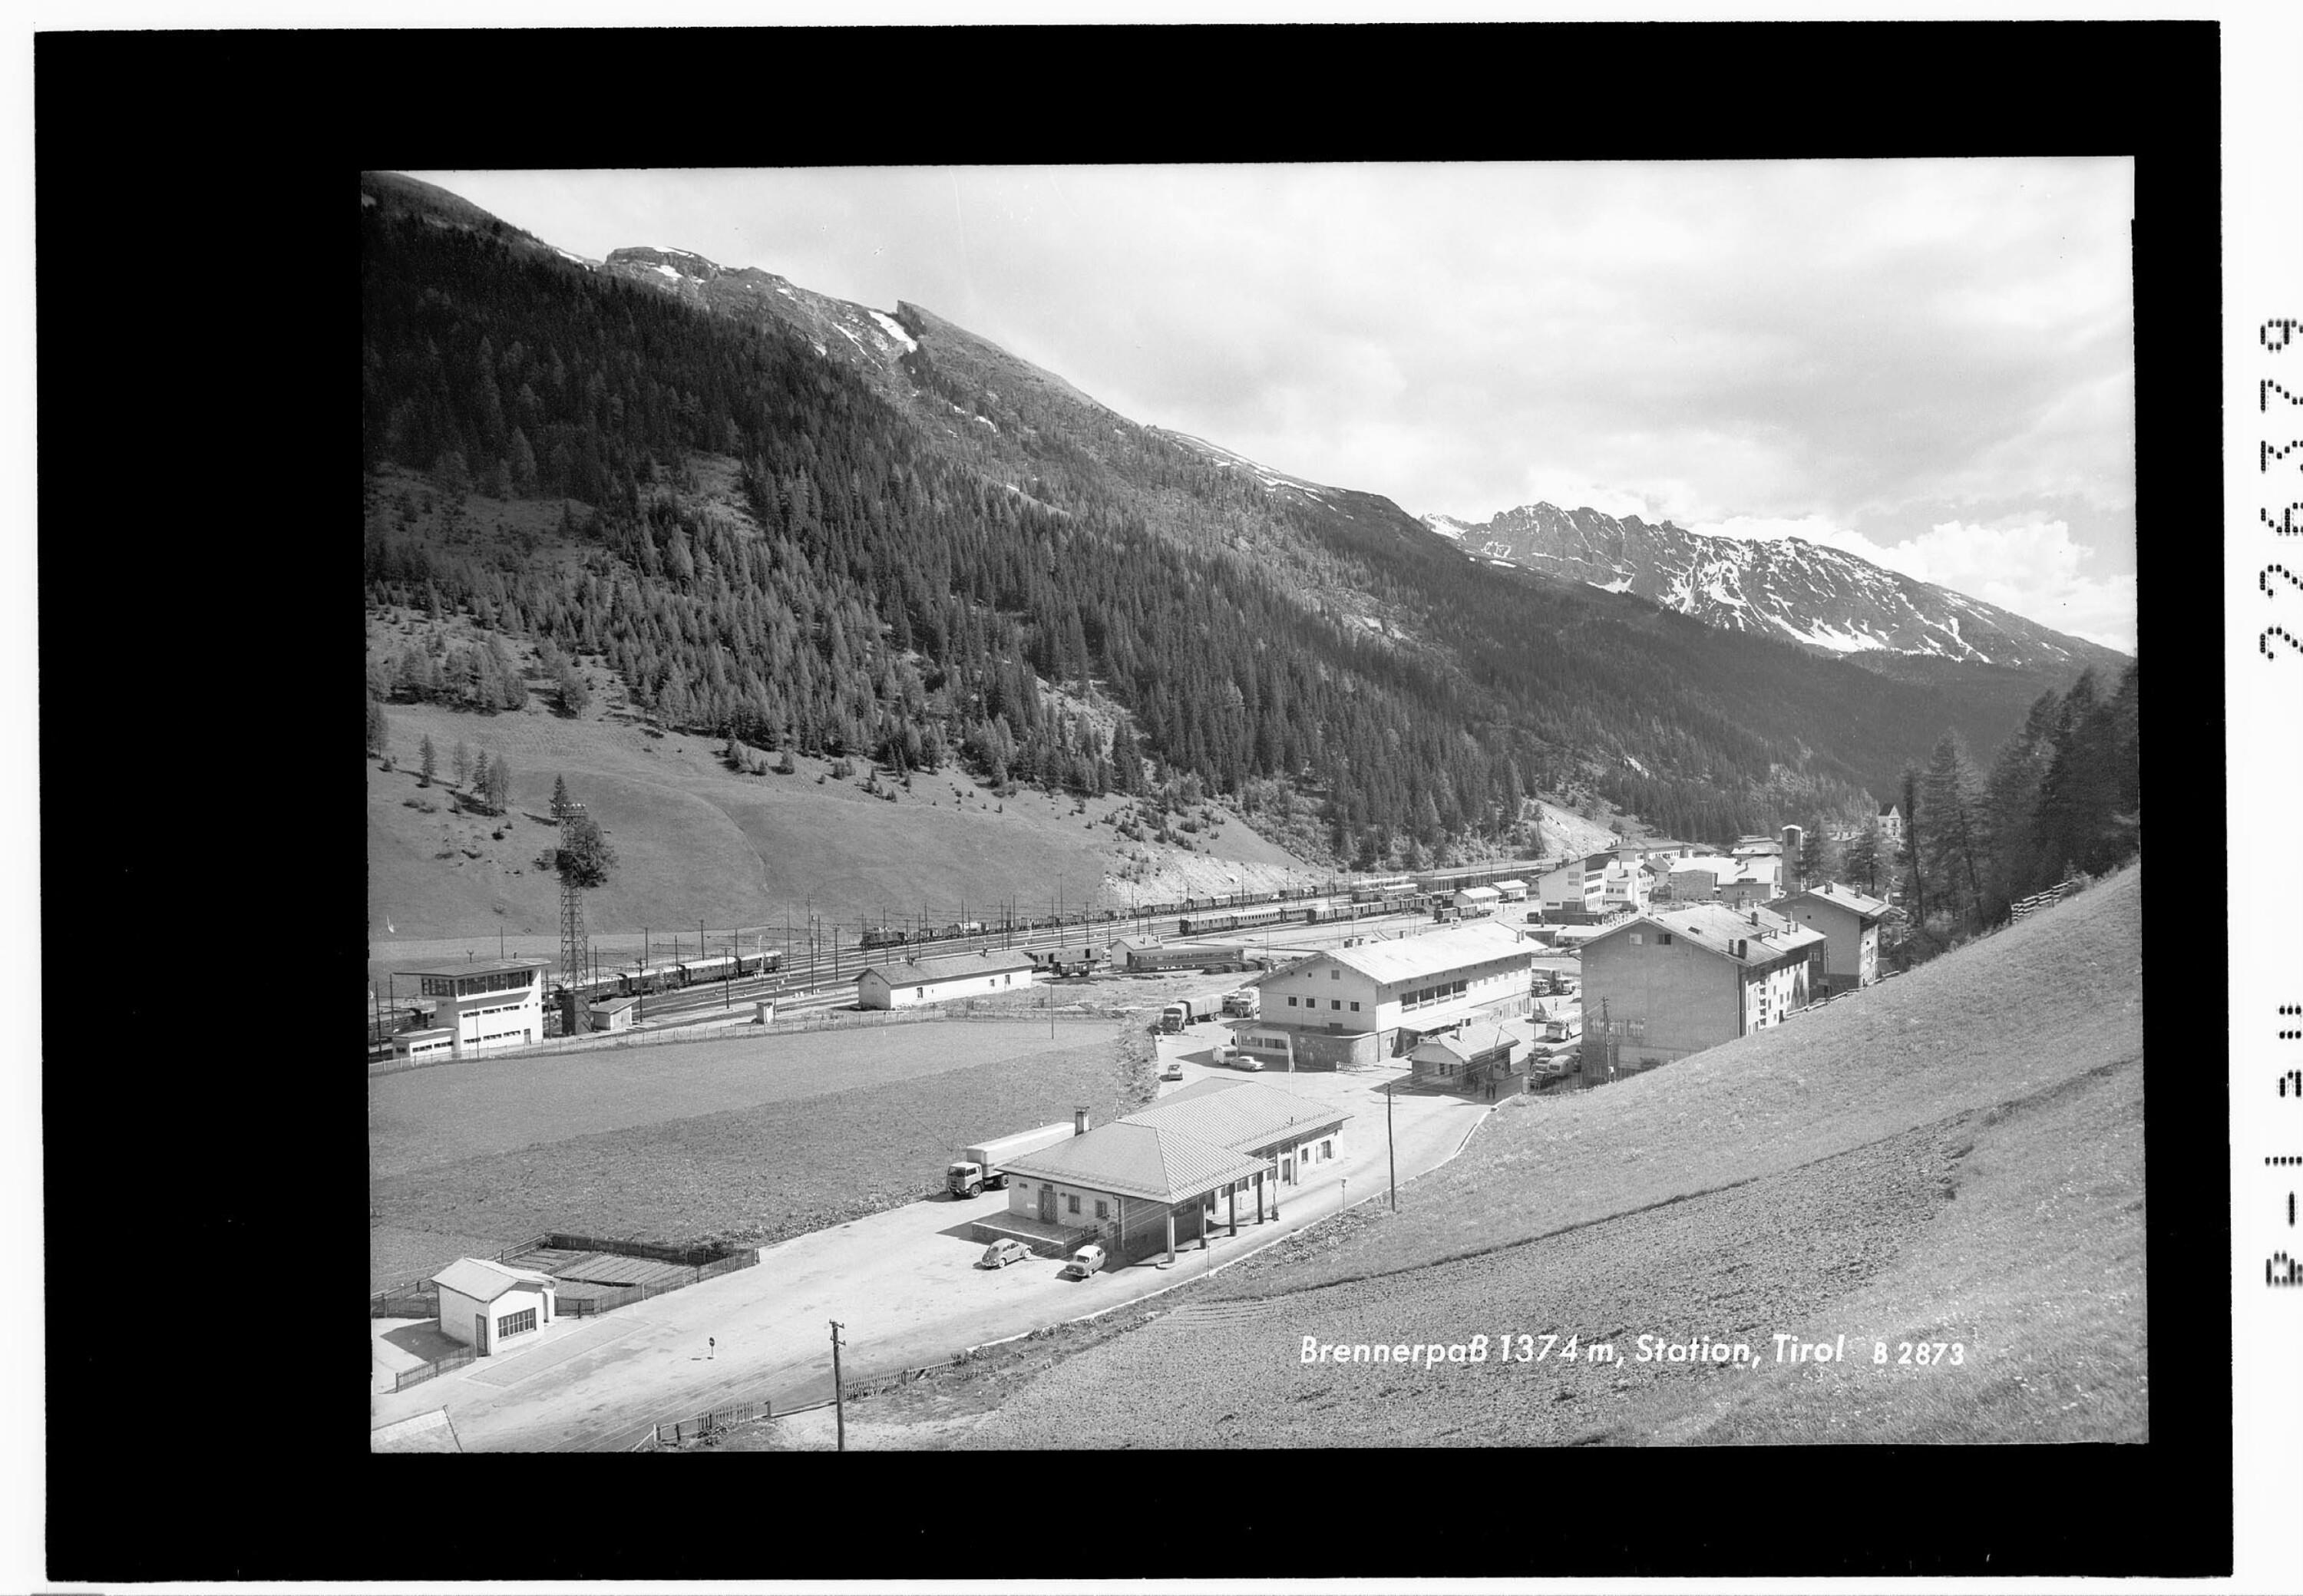 Brennerpass 1374 m / Station / Tirol></div>


    <hr>
    <div class=